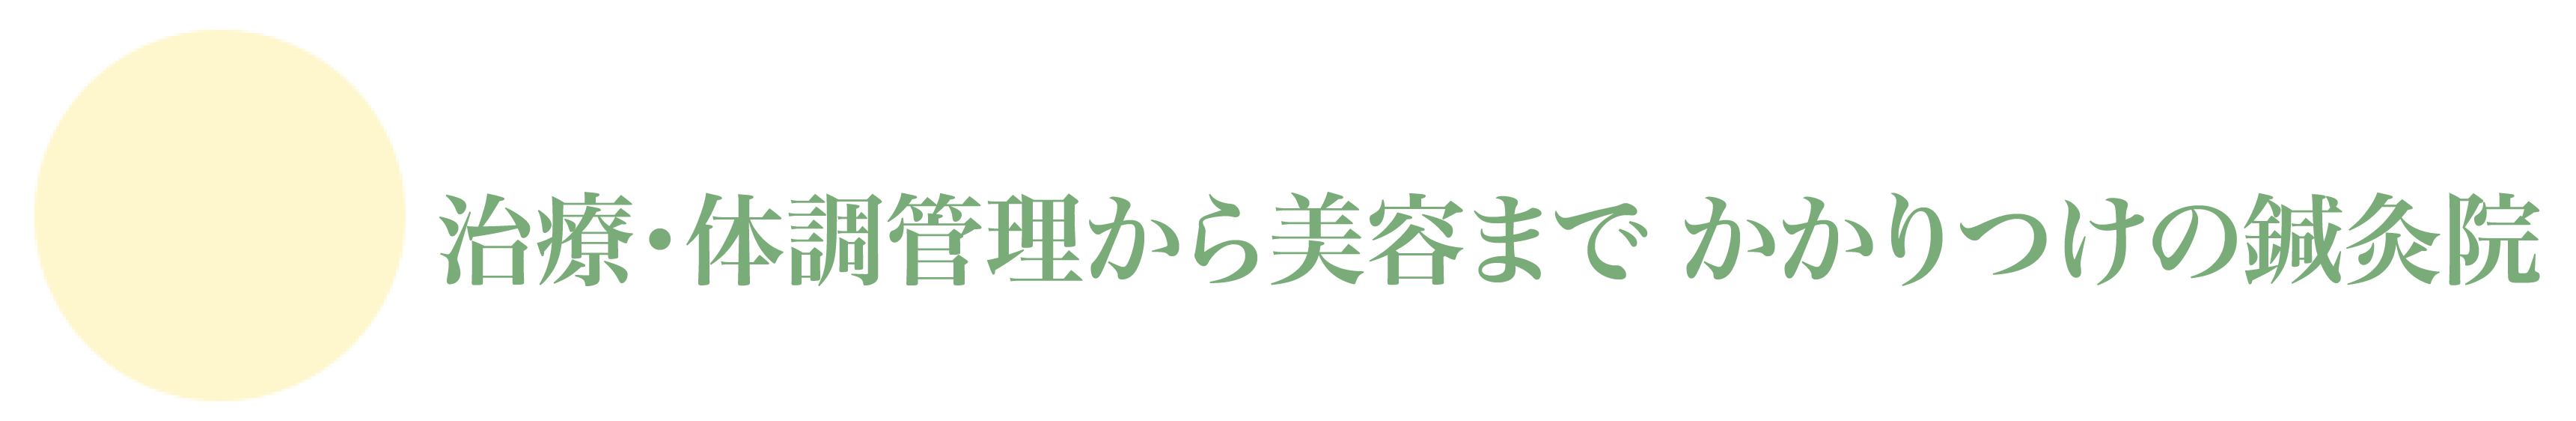 asdsa 02 - <span style="font-family: serif;">治療院紹介